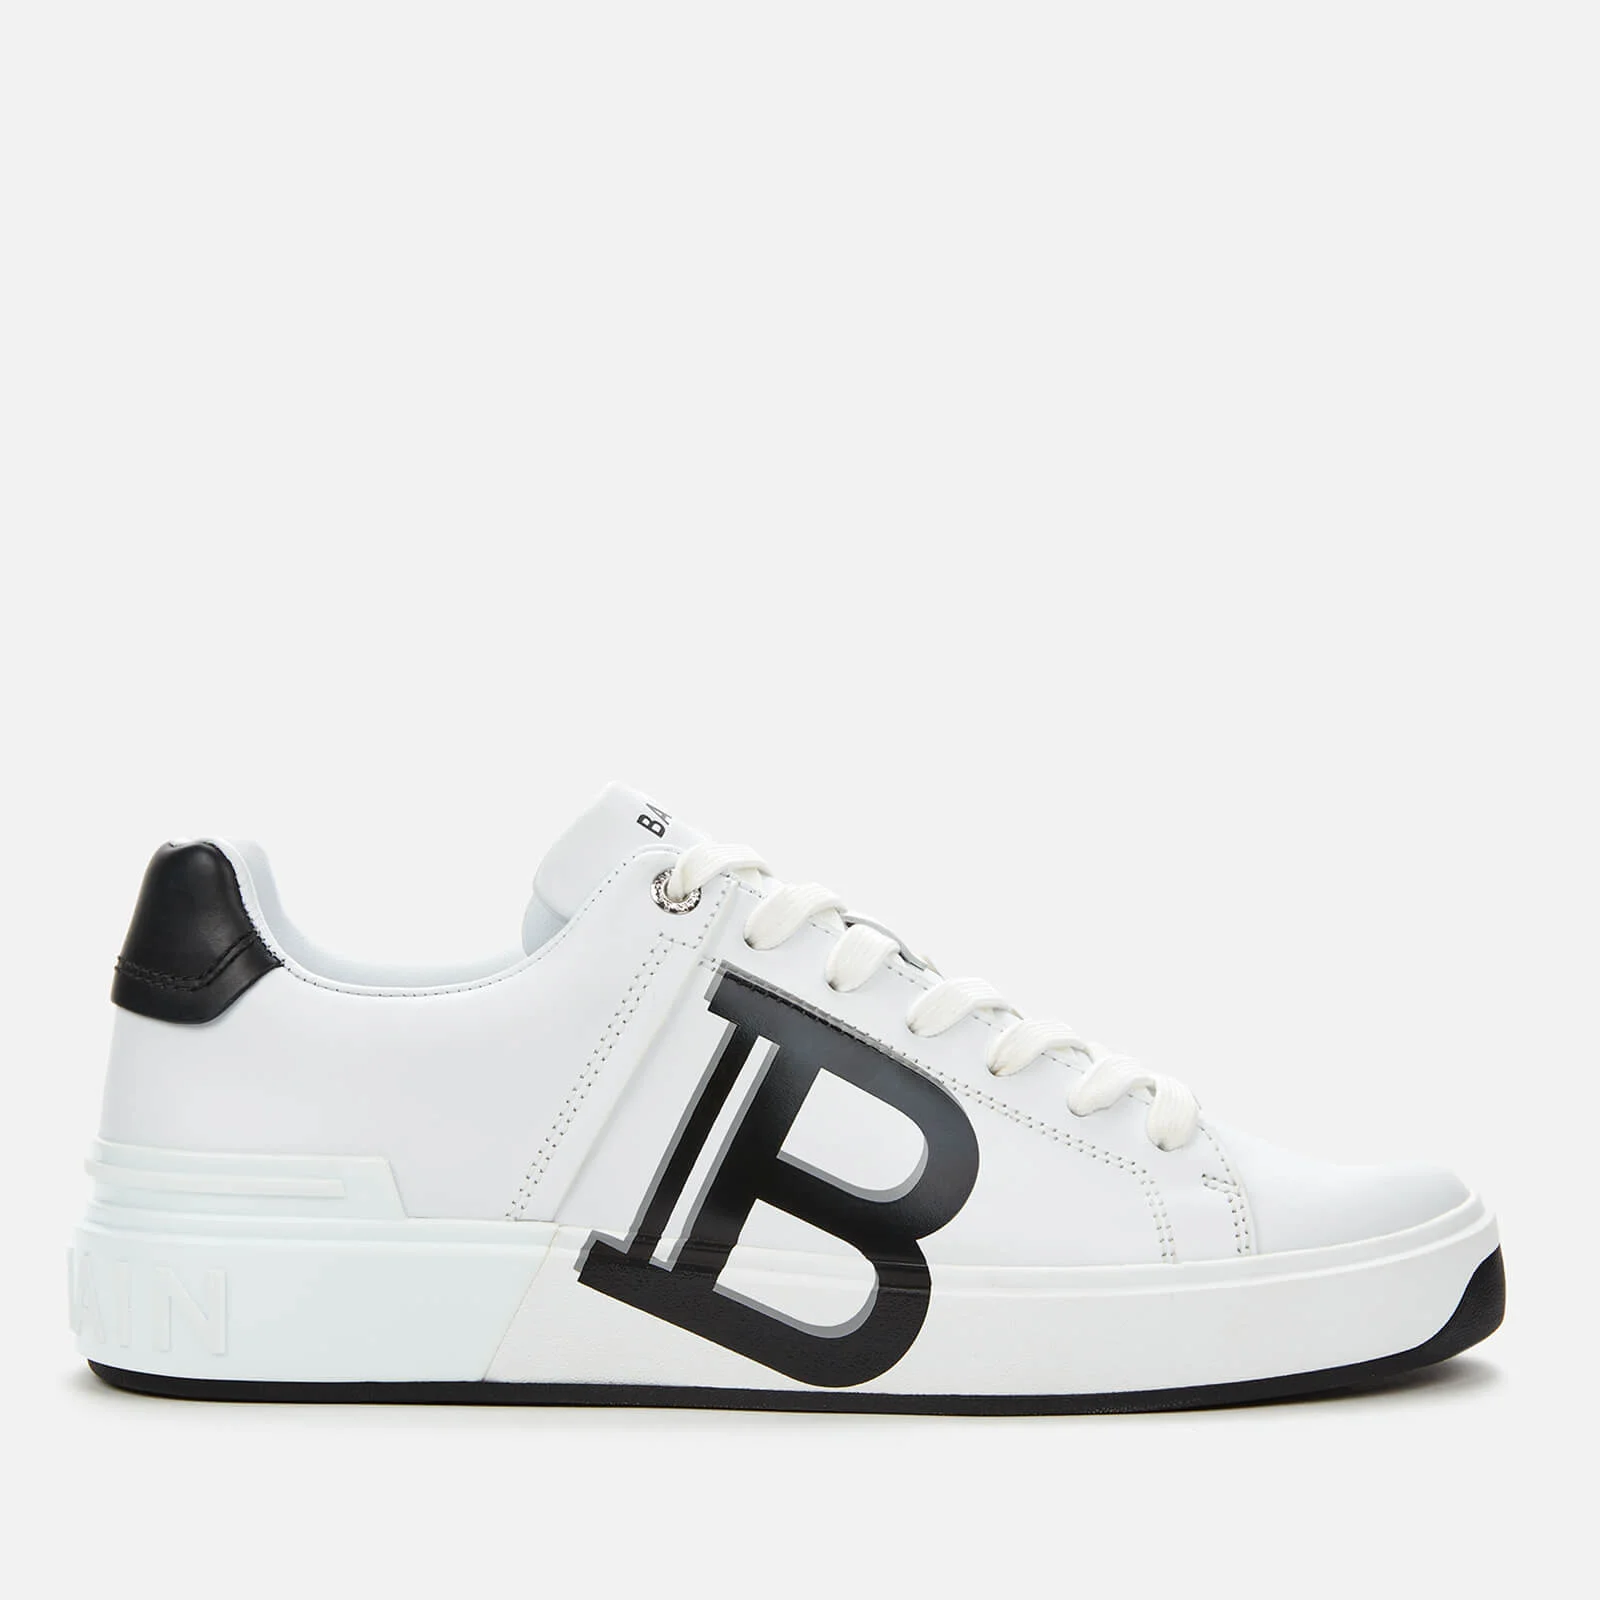 Balmain Men's B-Court Leather Print Trainers - Blanc/Noir Image 1